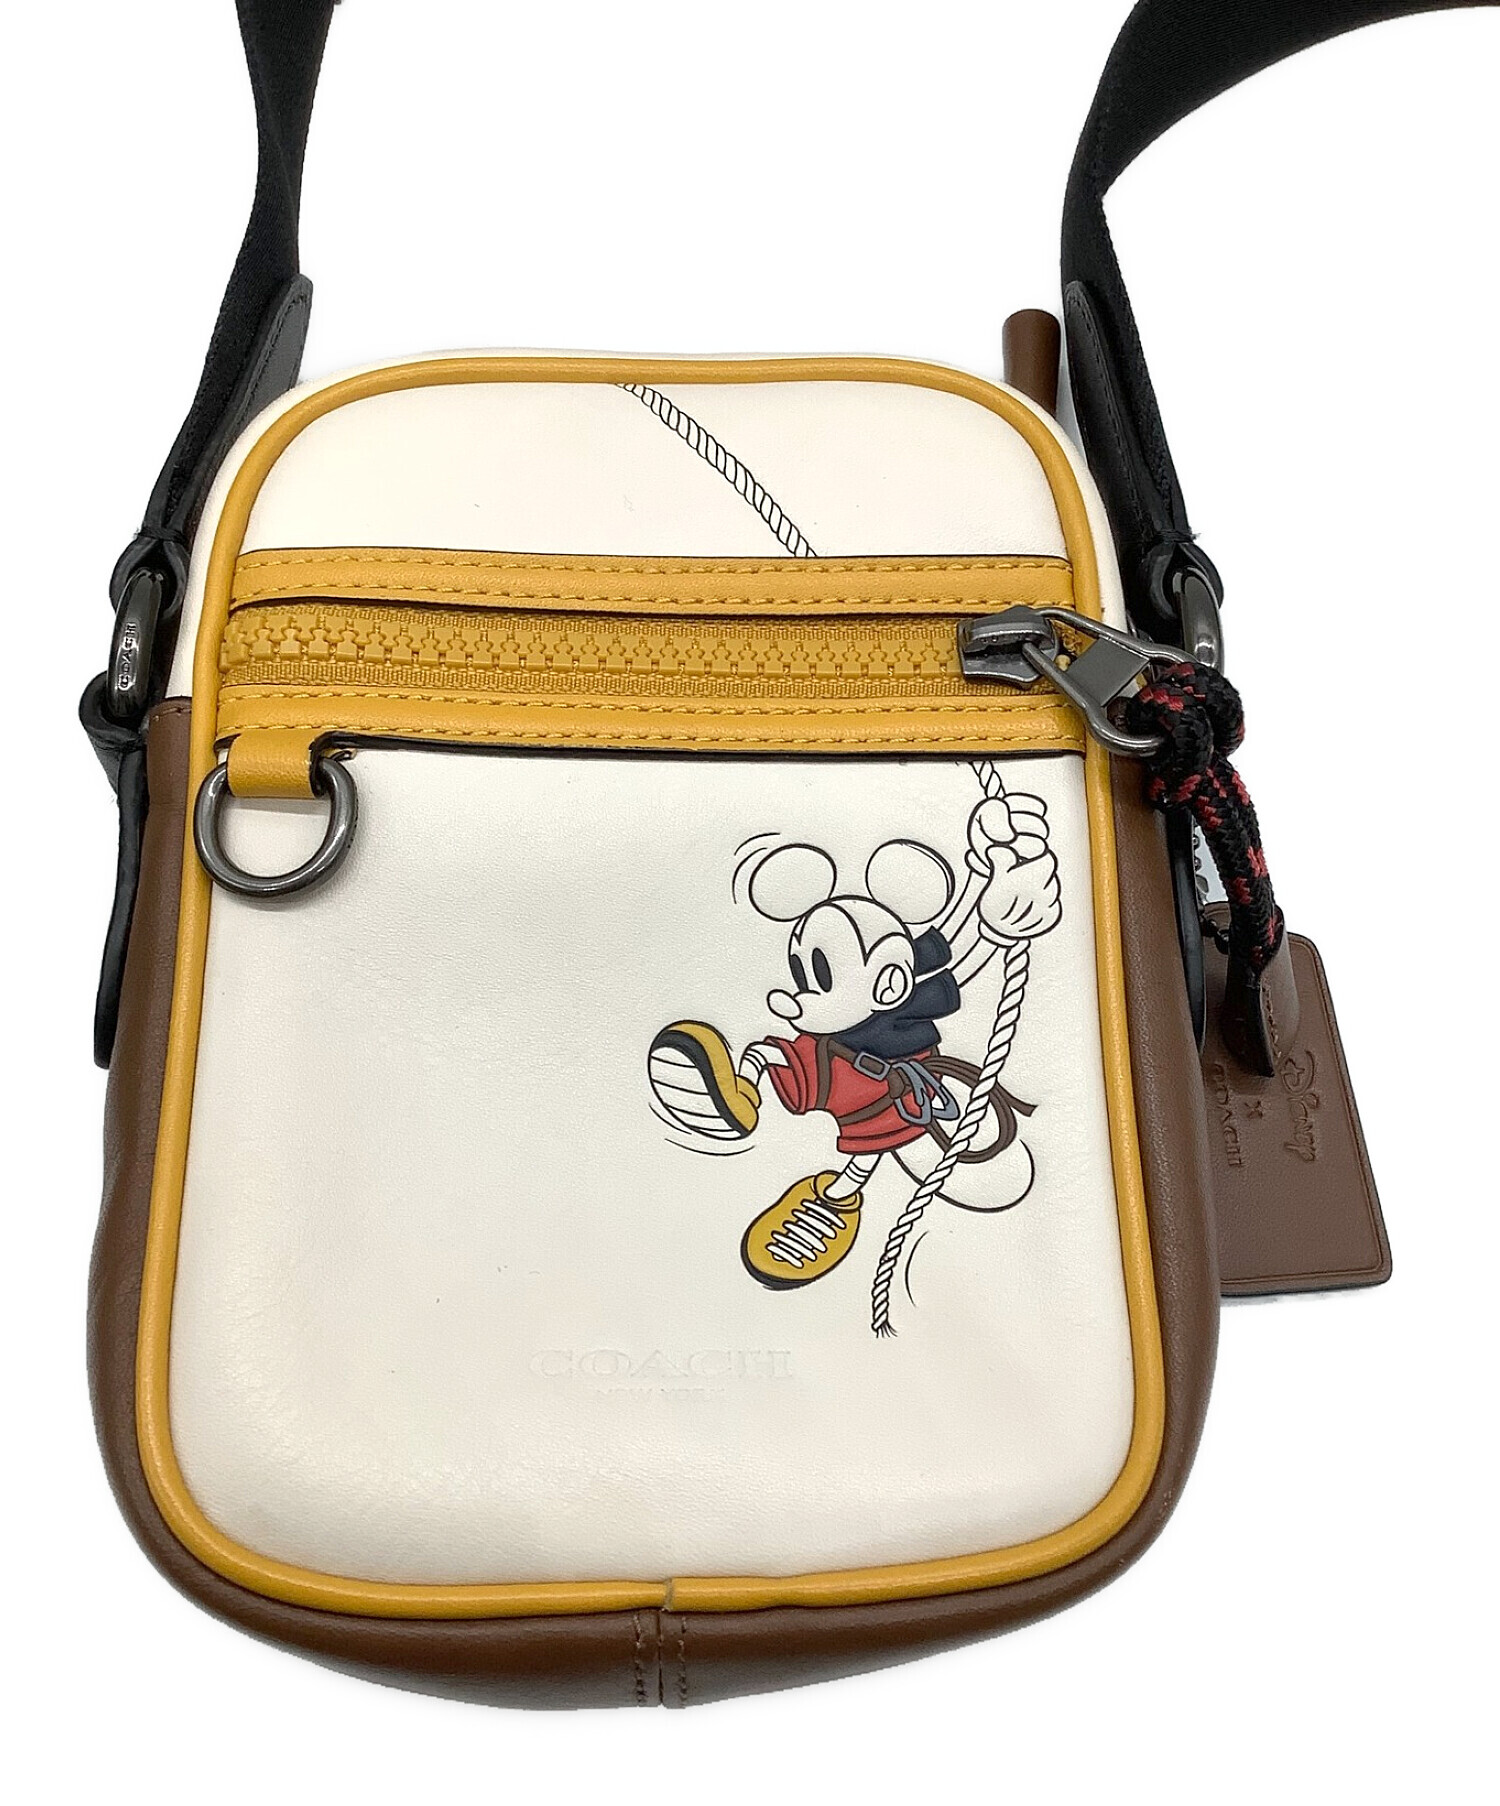 コーチ ショルダーバッグ 斜めがけ 3918 ベースボールペーサー ミッキーマウス ディズニー レザー 革 ライトベージュ ブラウン イエロー系 カジュアル 普段使い レディース 女性 COACH shoulder Bag leather Disney